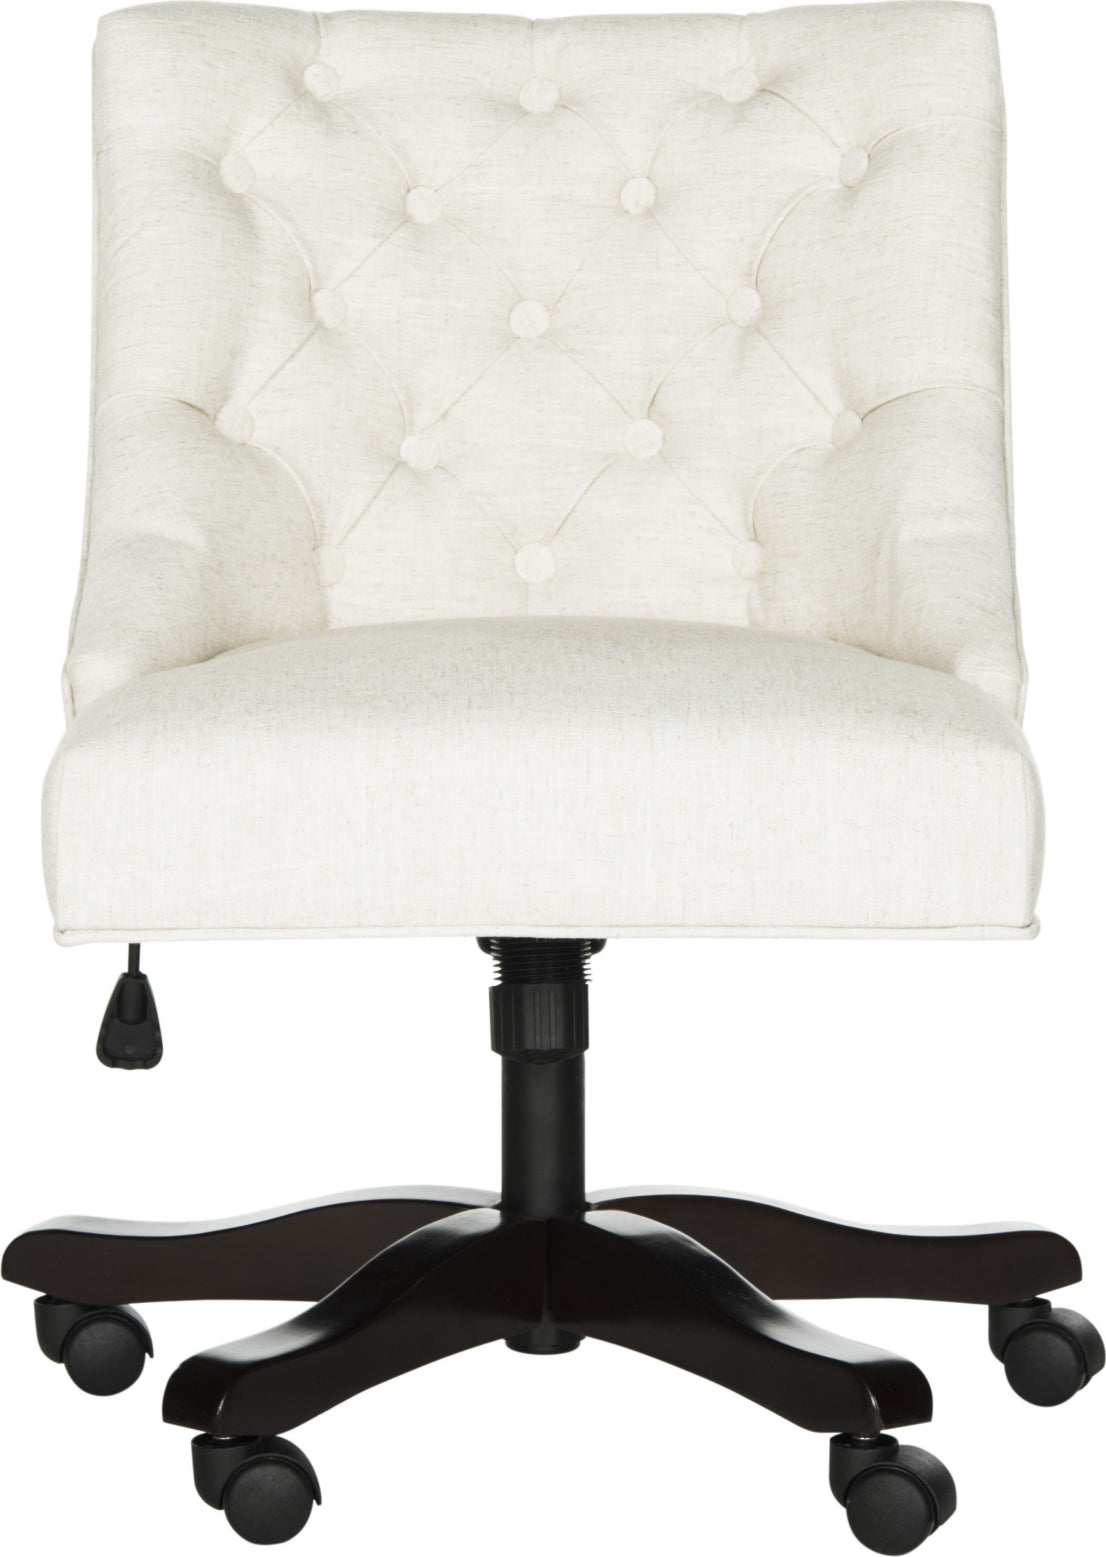 Safavieh Soho Tufted Linen Swivel Desk Chair Light Cream Furniture main image